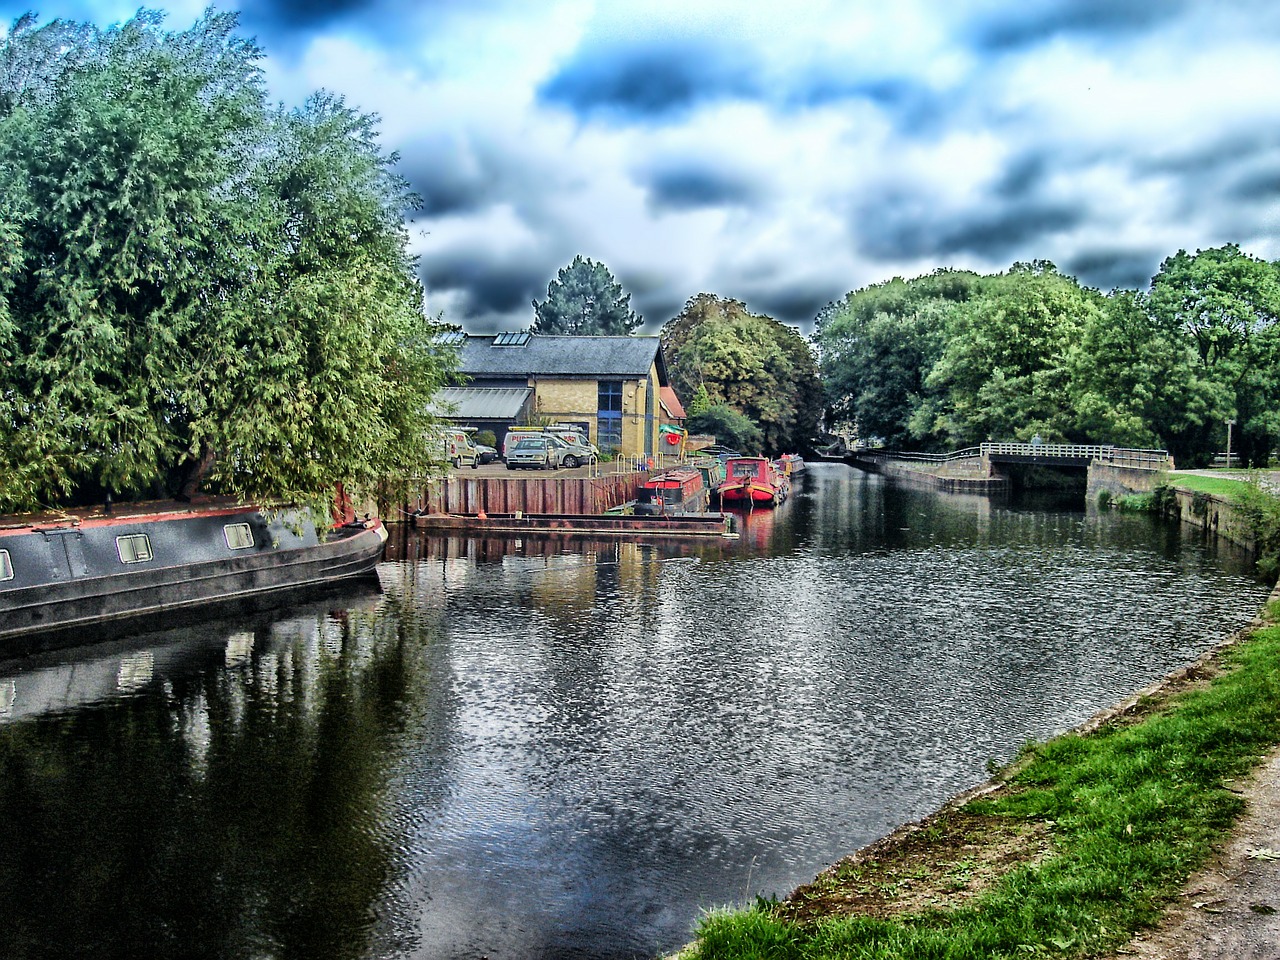 england canal houseboats free photo